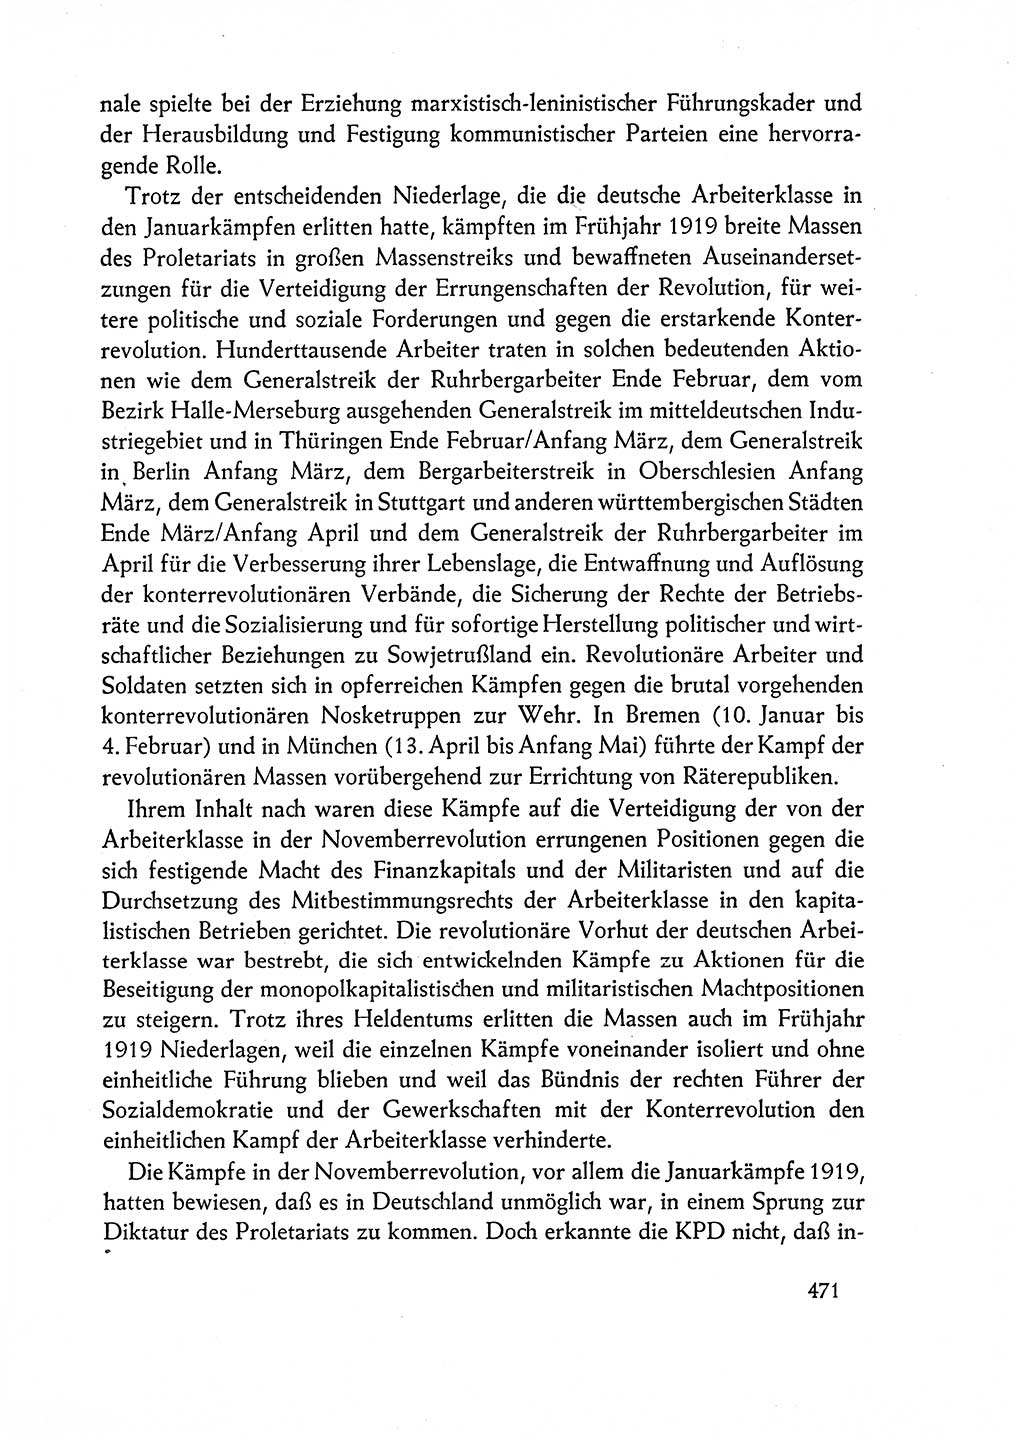 Dokumente der Sozialistischen Einheitspartei Deutschlands (SED) [Deutsche Demokratische Republik (DDR)] 1962-1963, Seite 471 (Dok. SED DDR 1962-1963, S. 471)